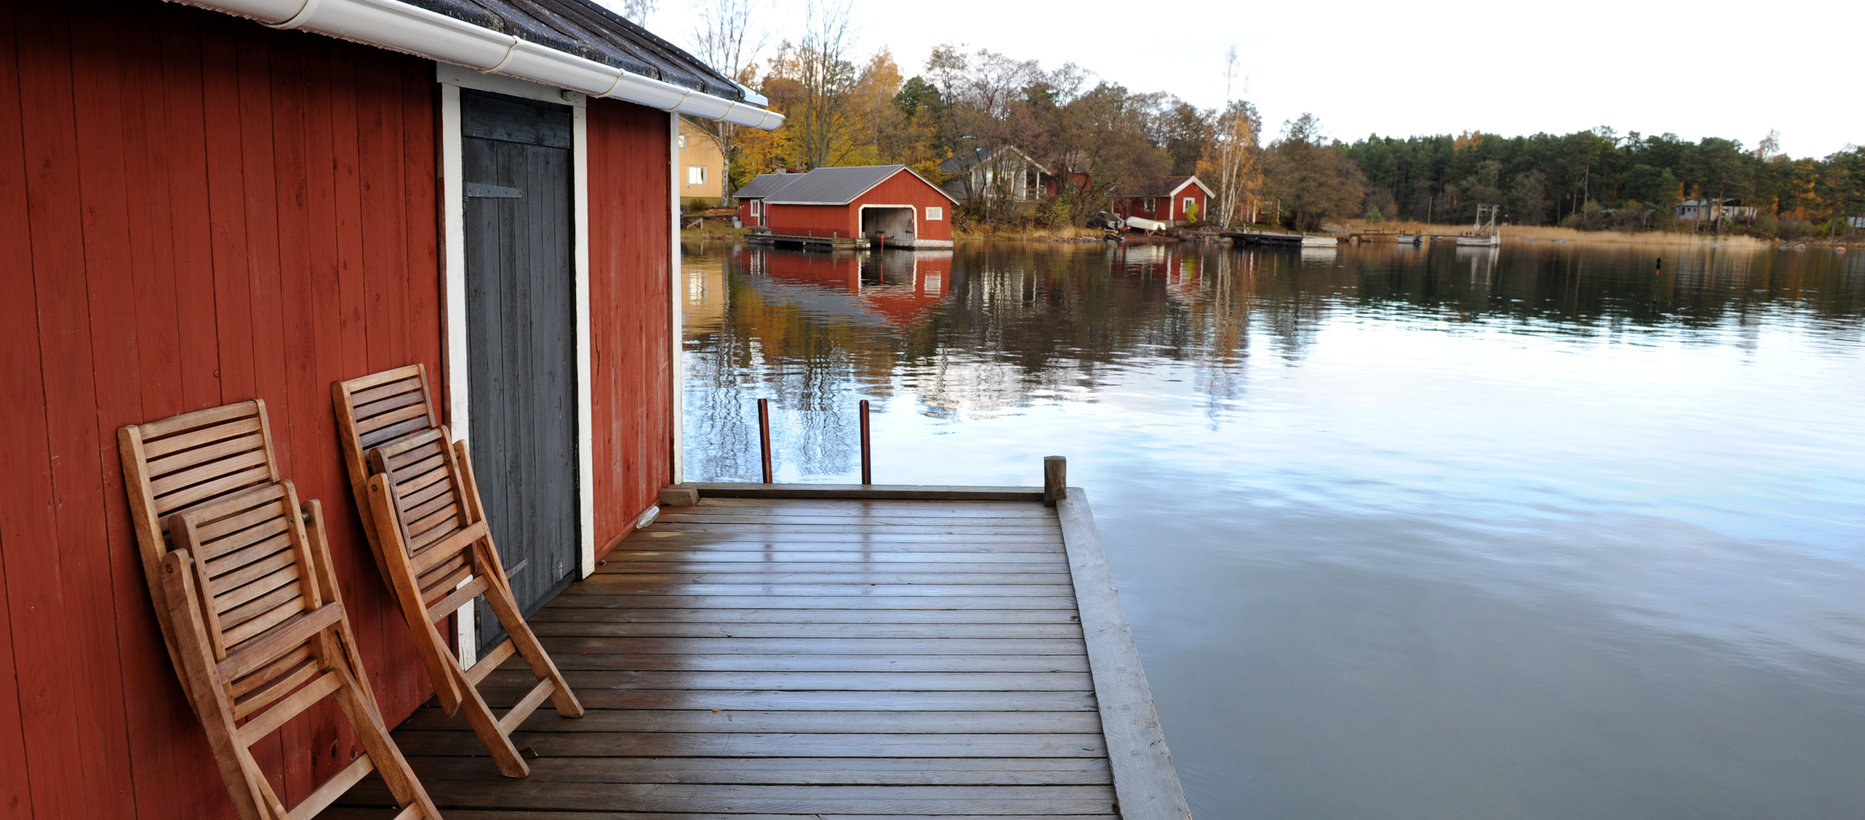 Hitis röda båthus med två ihopfälda stolar på bryggan. Vattnet ligger spegelblankt.